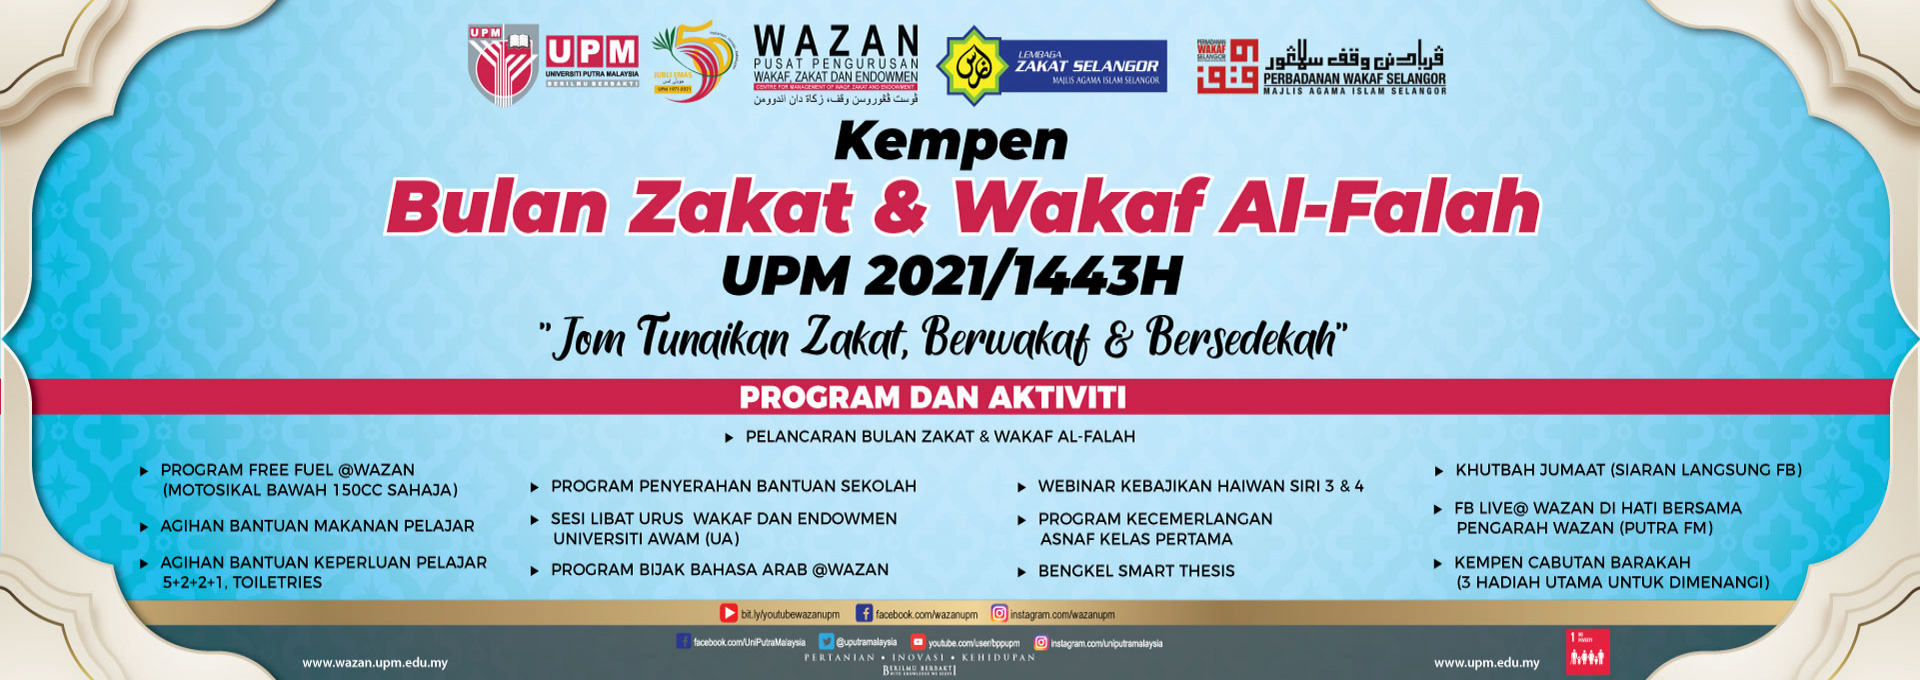 Bulan Zakat dan Wakaf Al-Falah, WAZAN UPM 2021